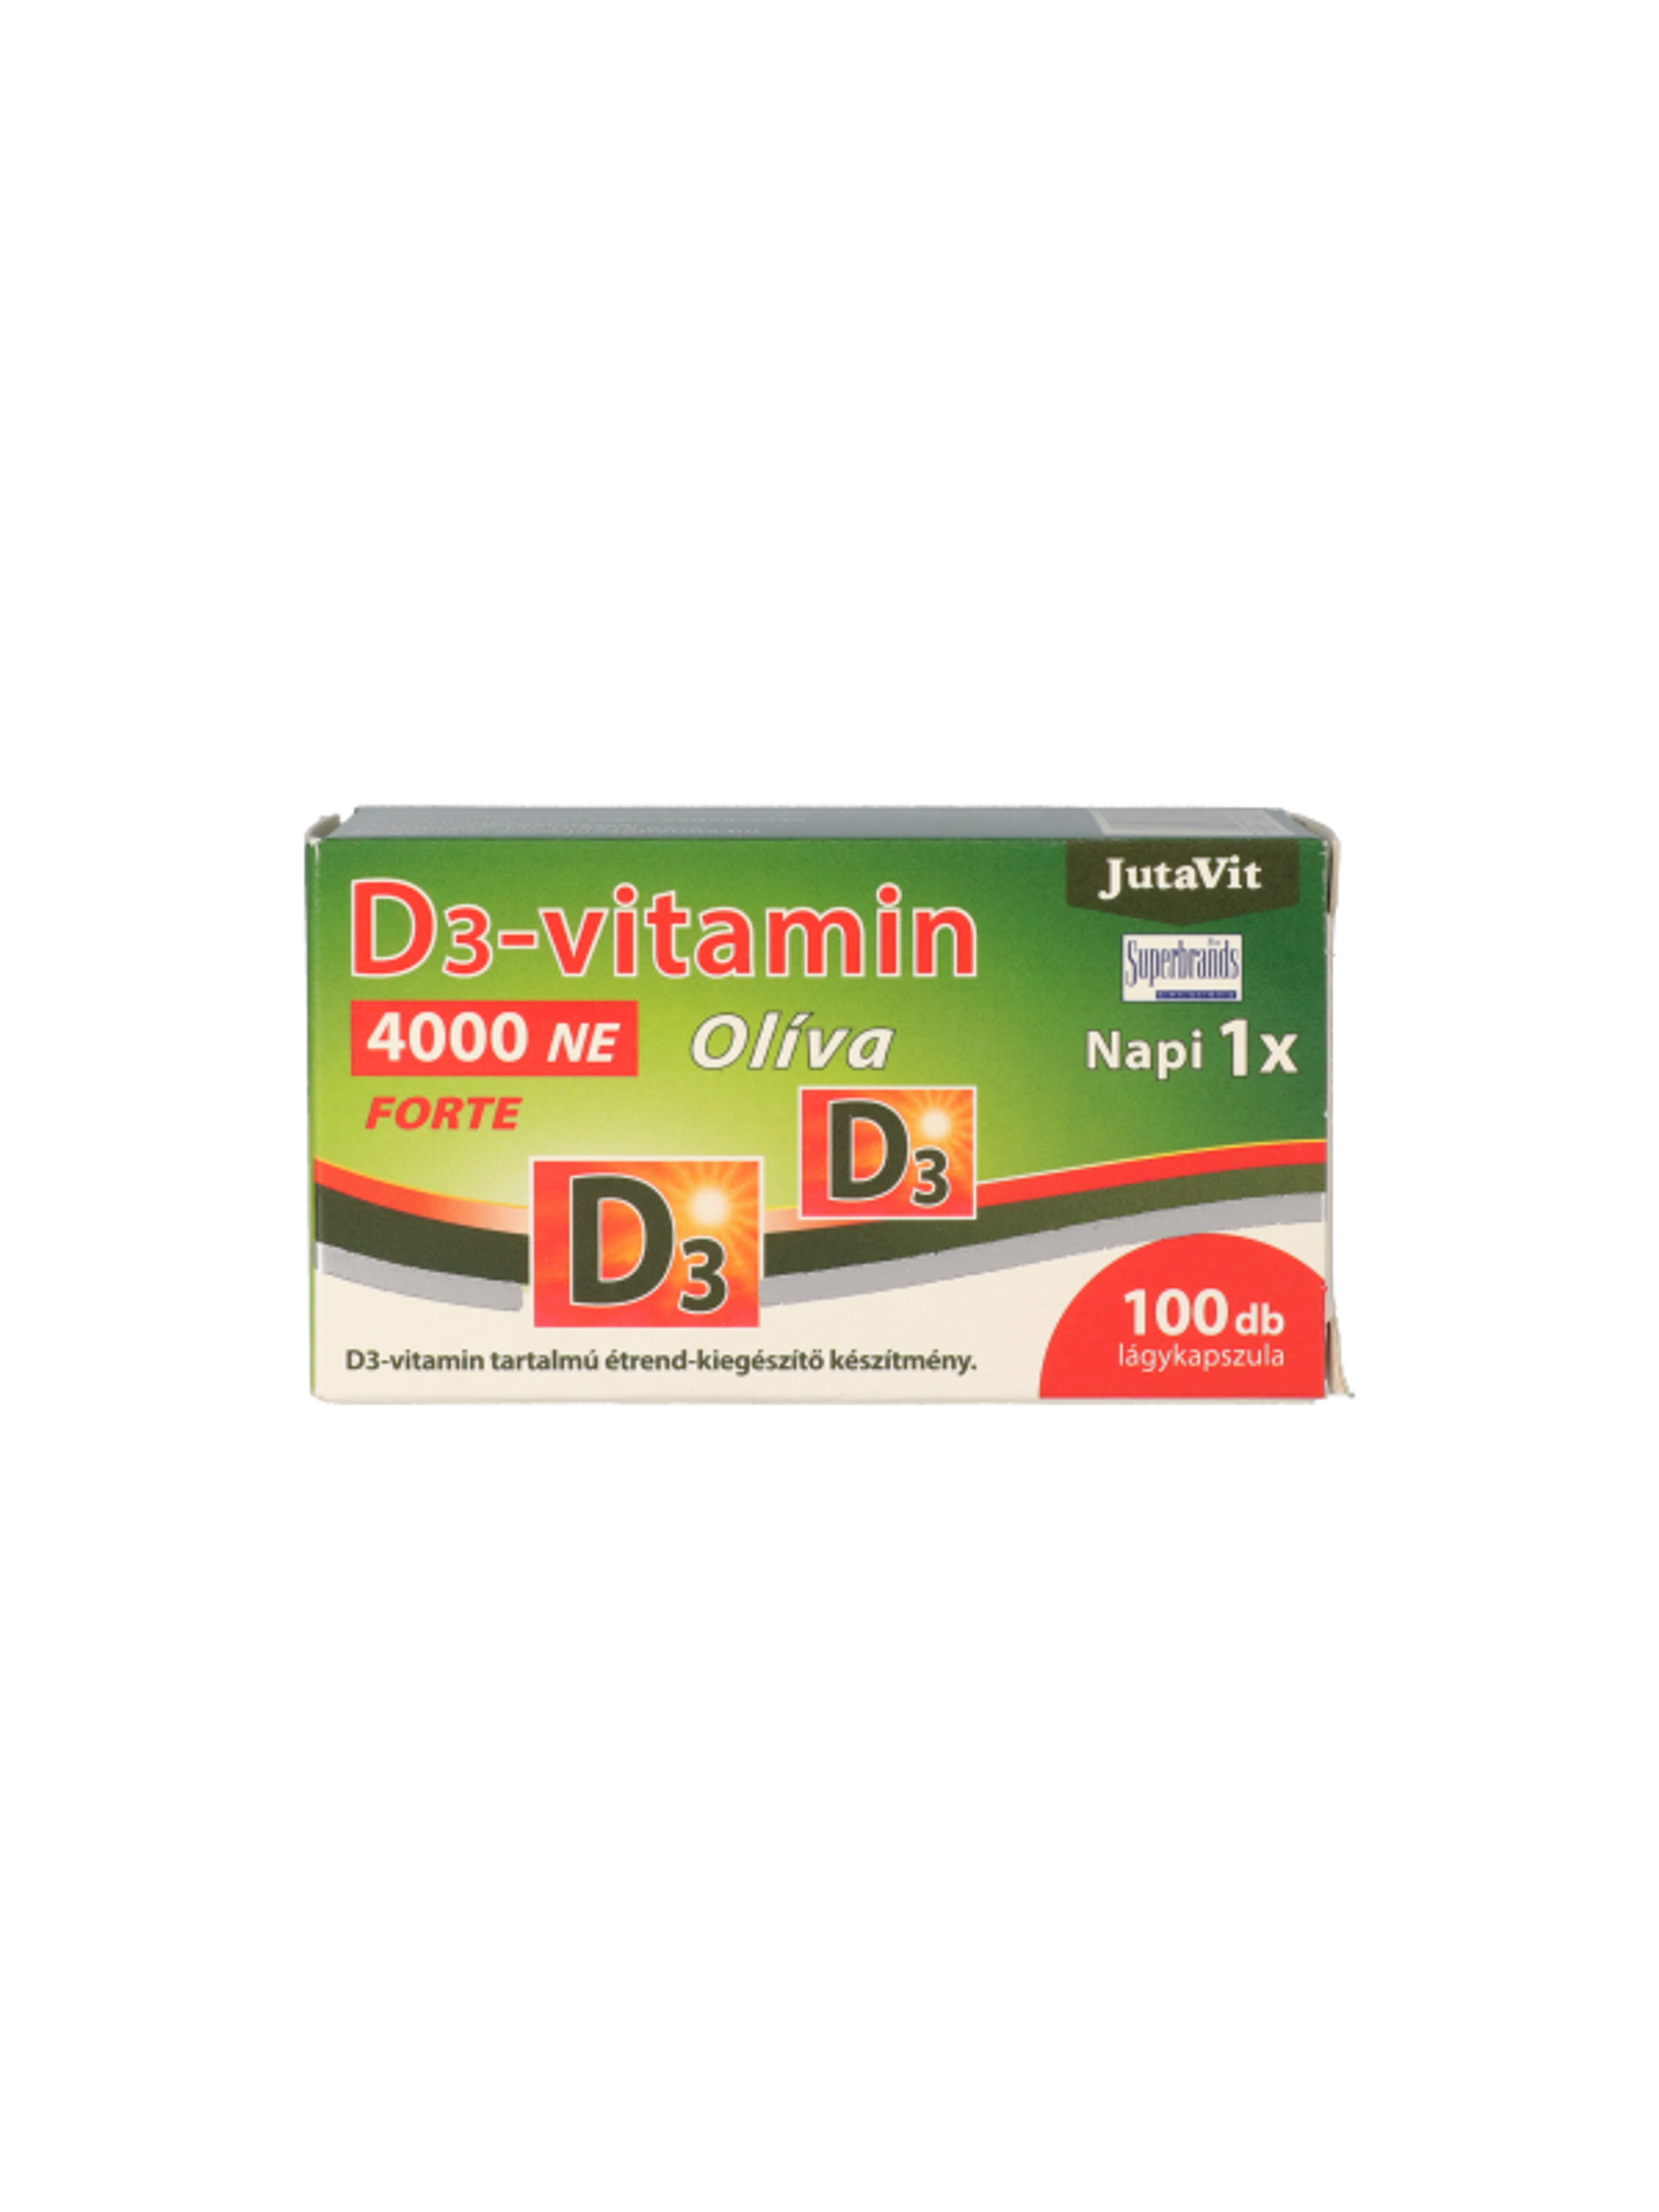 JutaVit D3-vitamin 4000NE Olíva Forte tabletta - 100 db-1